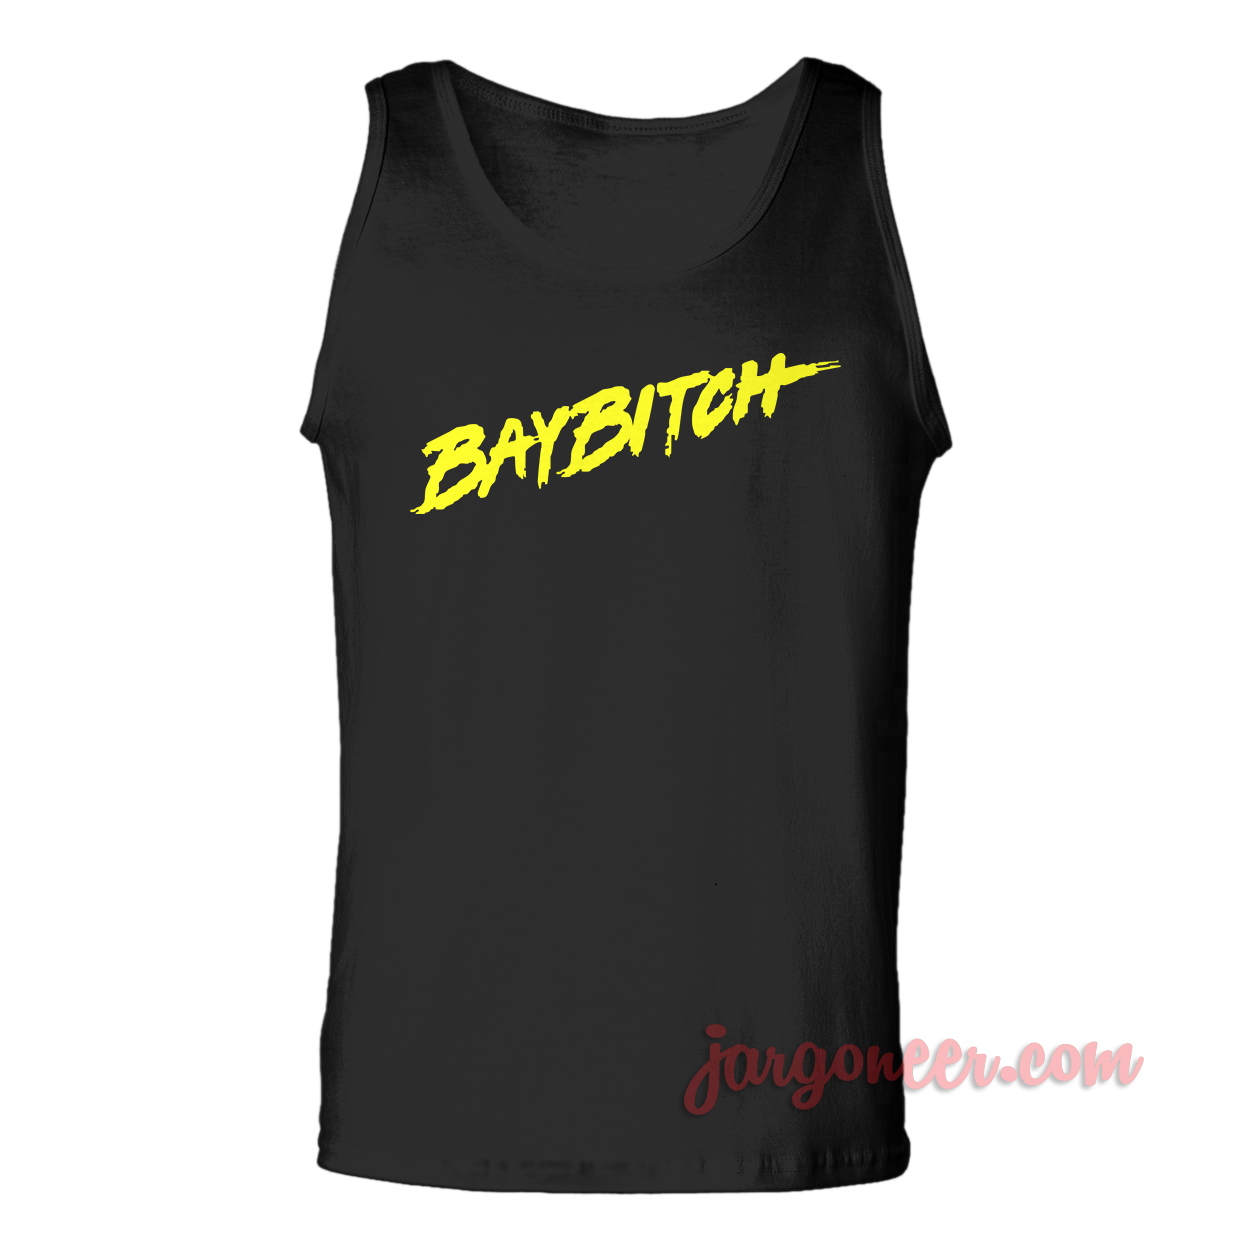 Baybitch Black TTM - Shop Unique Graphic Cool Shirt Designs